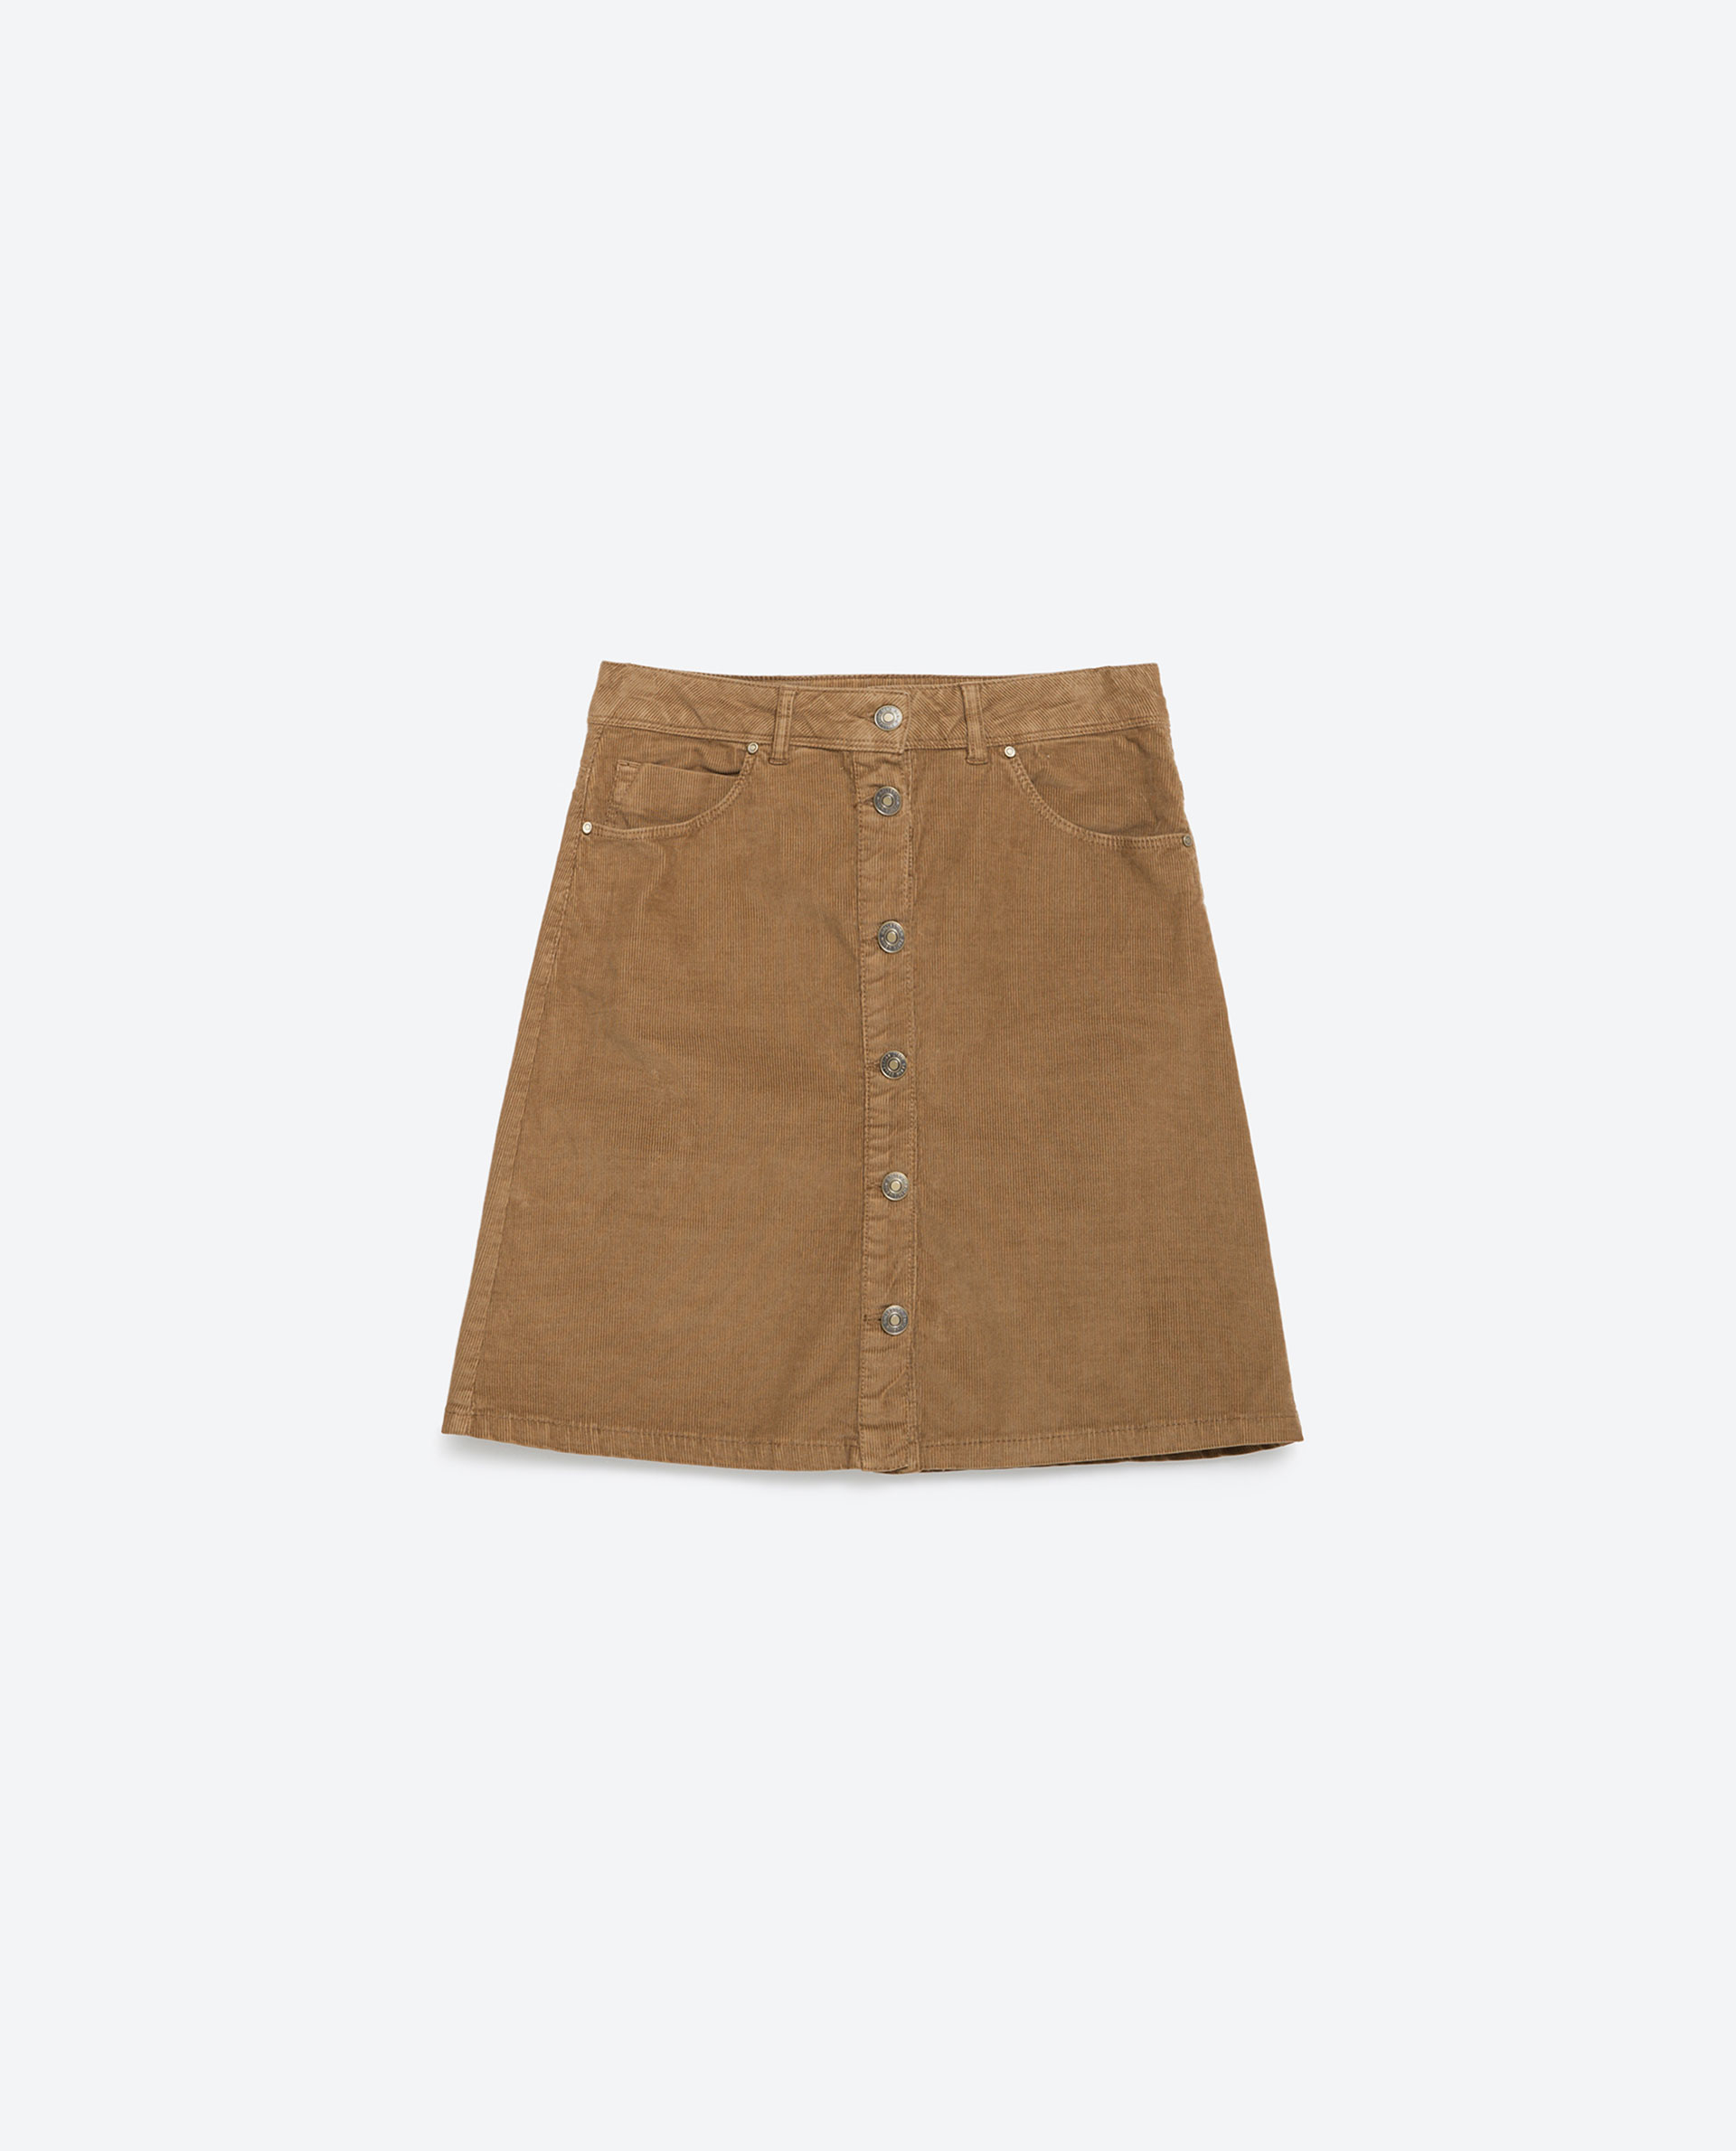 Zara Short Corduroy Skirt Short Corduroy Skirt in Beige (Camel) | Lyst